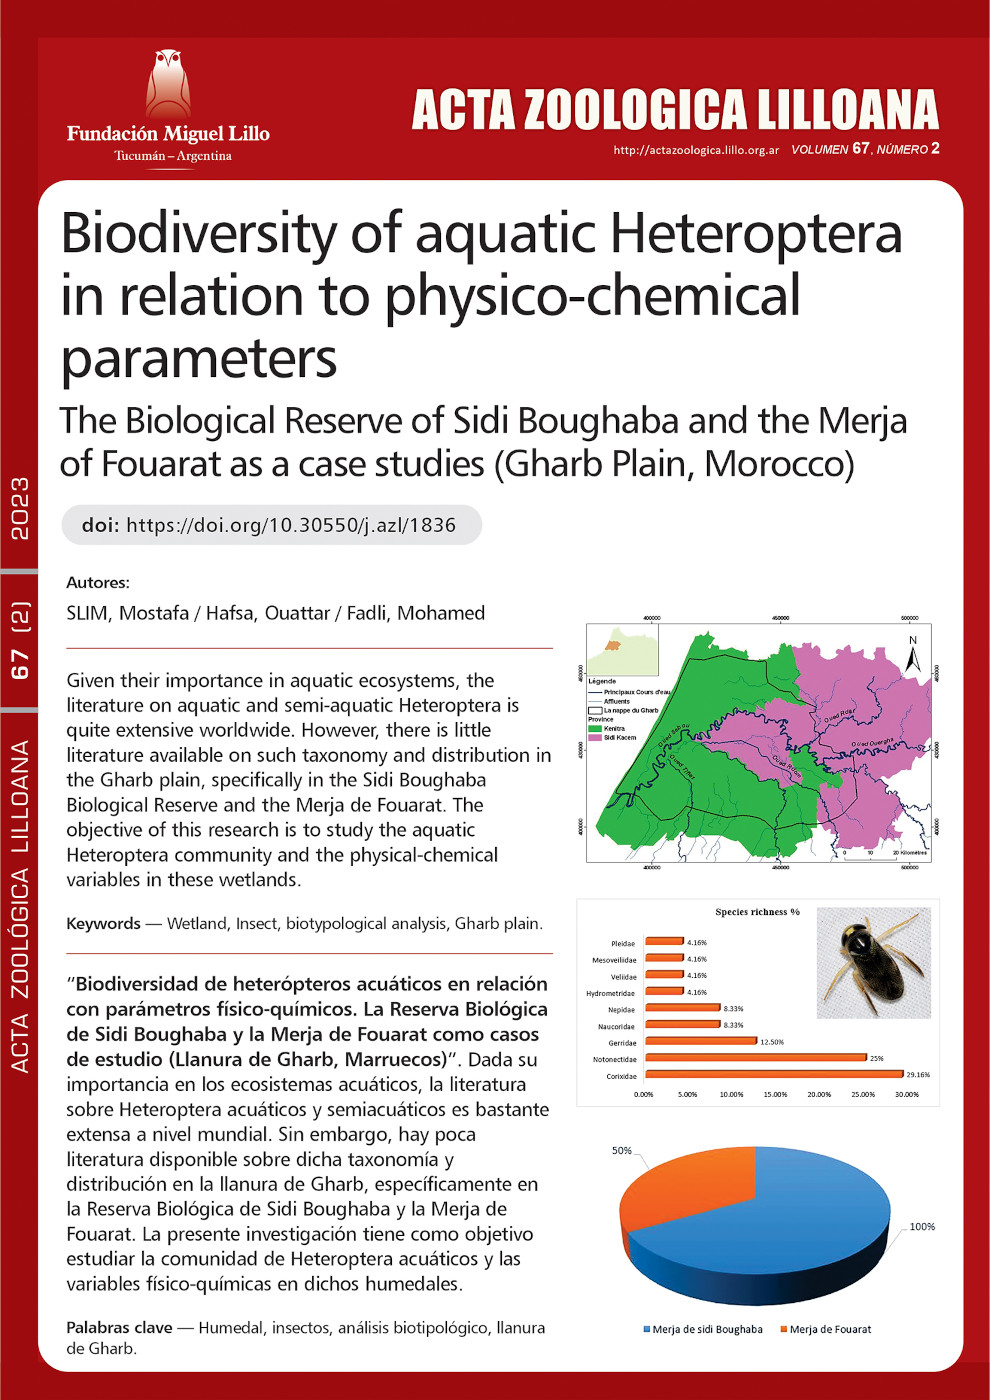 Biodiversidad de heterópteros acuáticos en relación con parámetros físico-químicos, la Reserva Biológica de Sidi Boughaba y la Merja de Fouarat como casos de estudio (Llanura de Gharb, Marruecos)